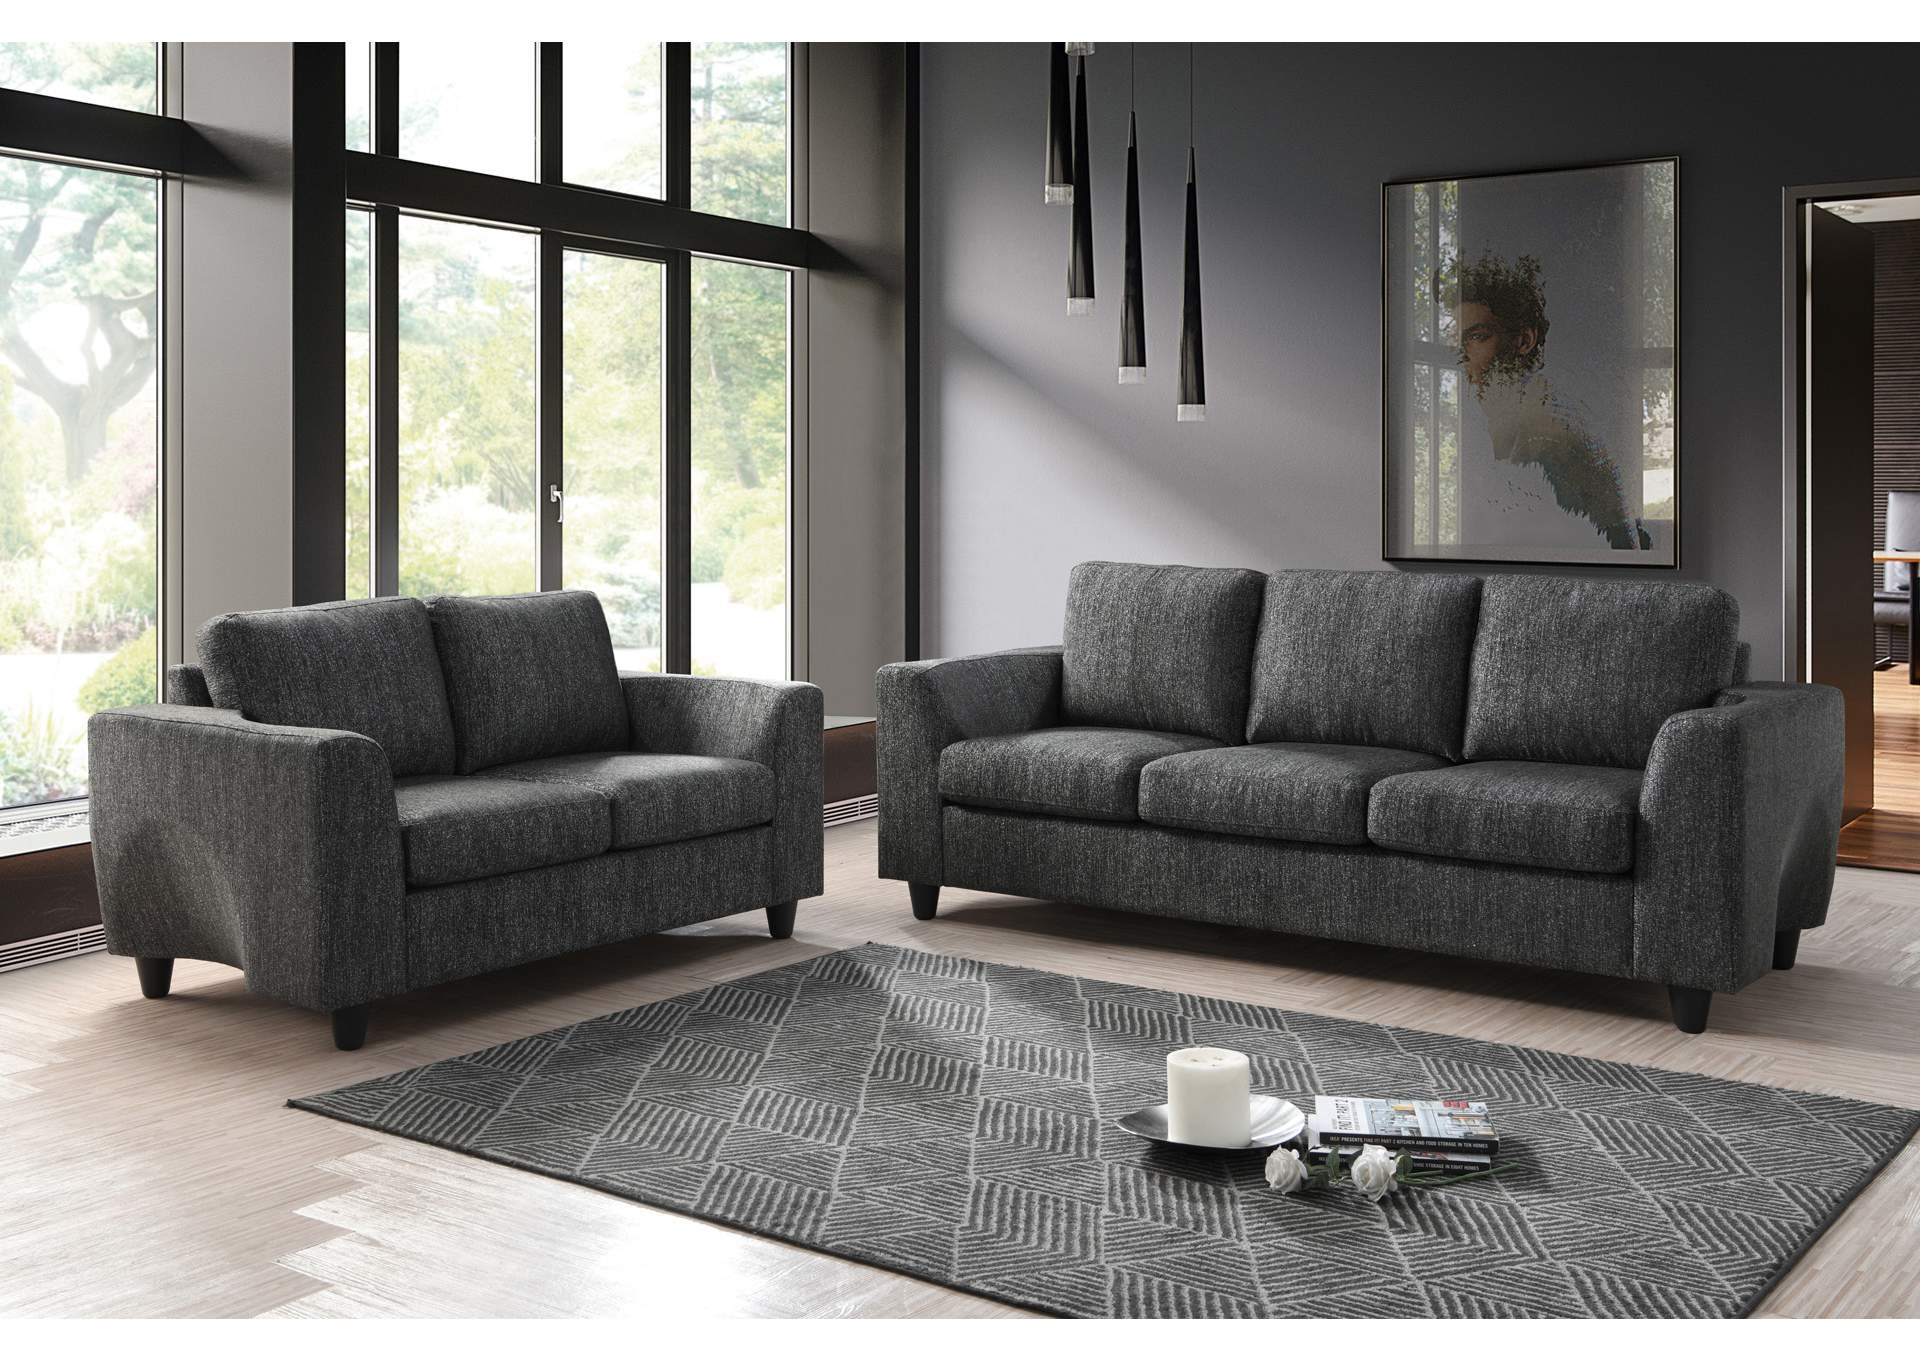 Dark Grey Sofa,Global Furniture USA